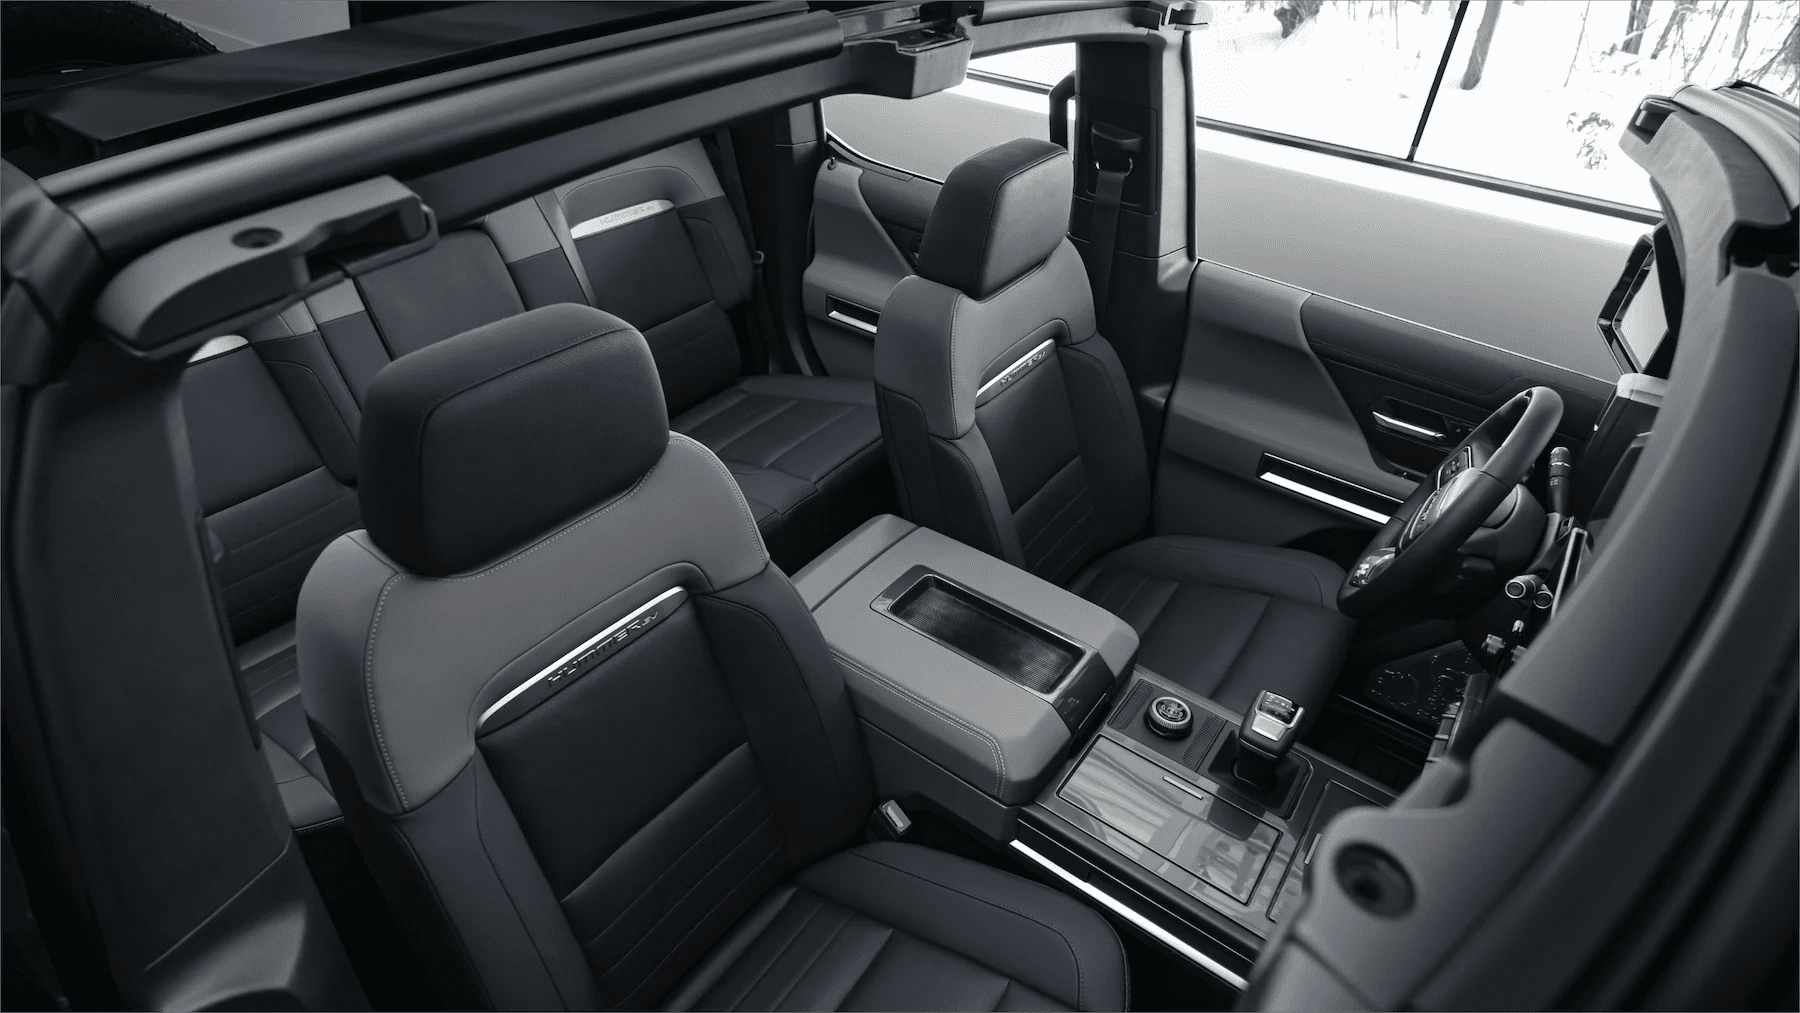 Full interior of the 2023 Hummer EV SUV